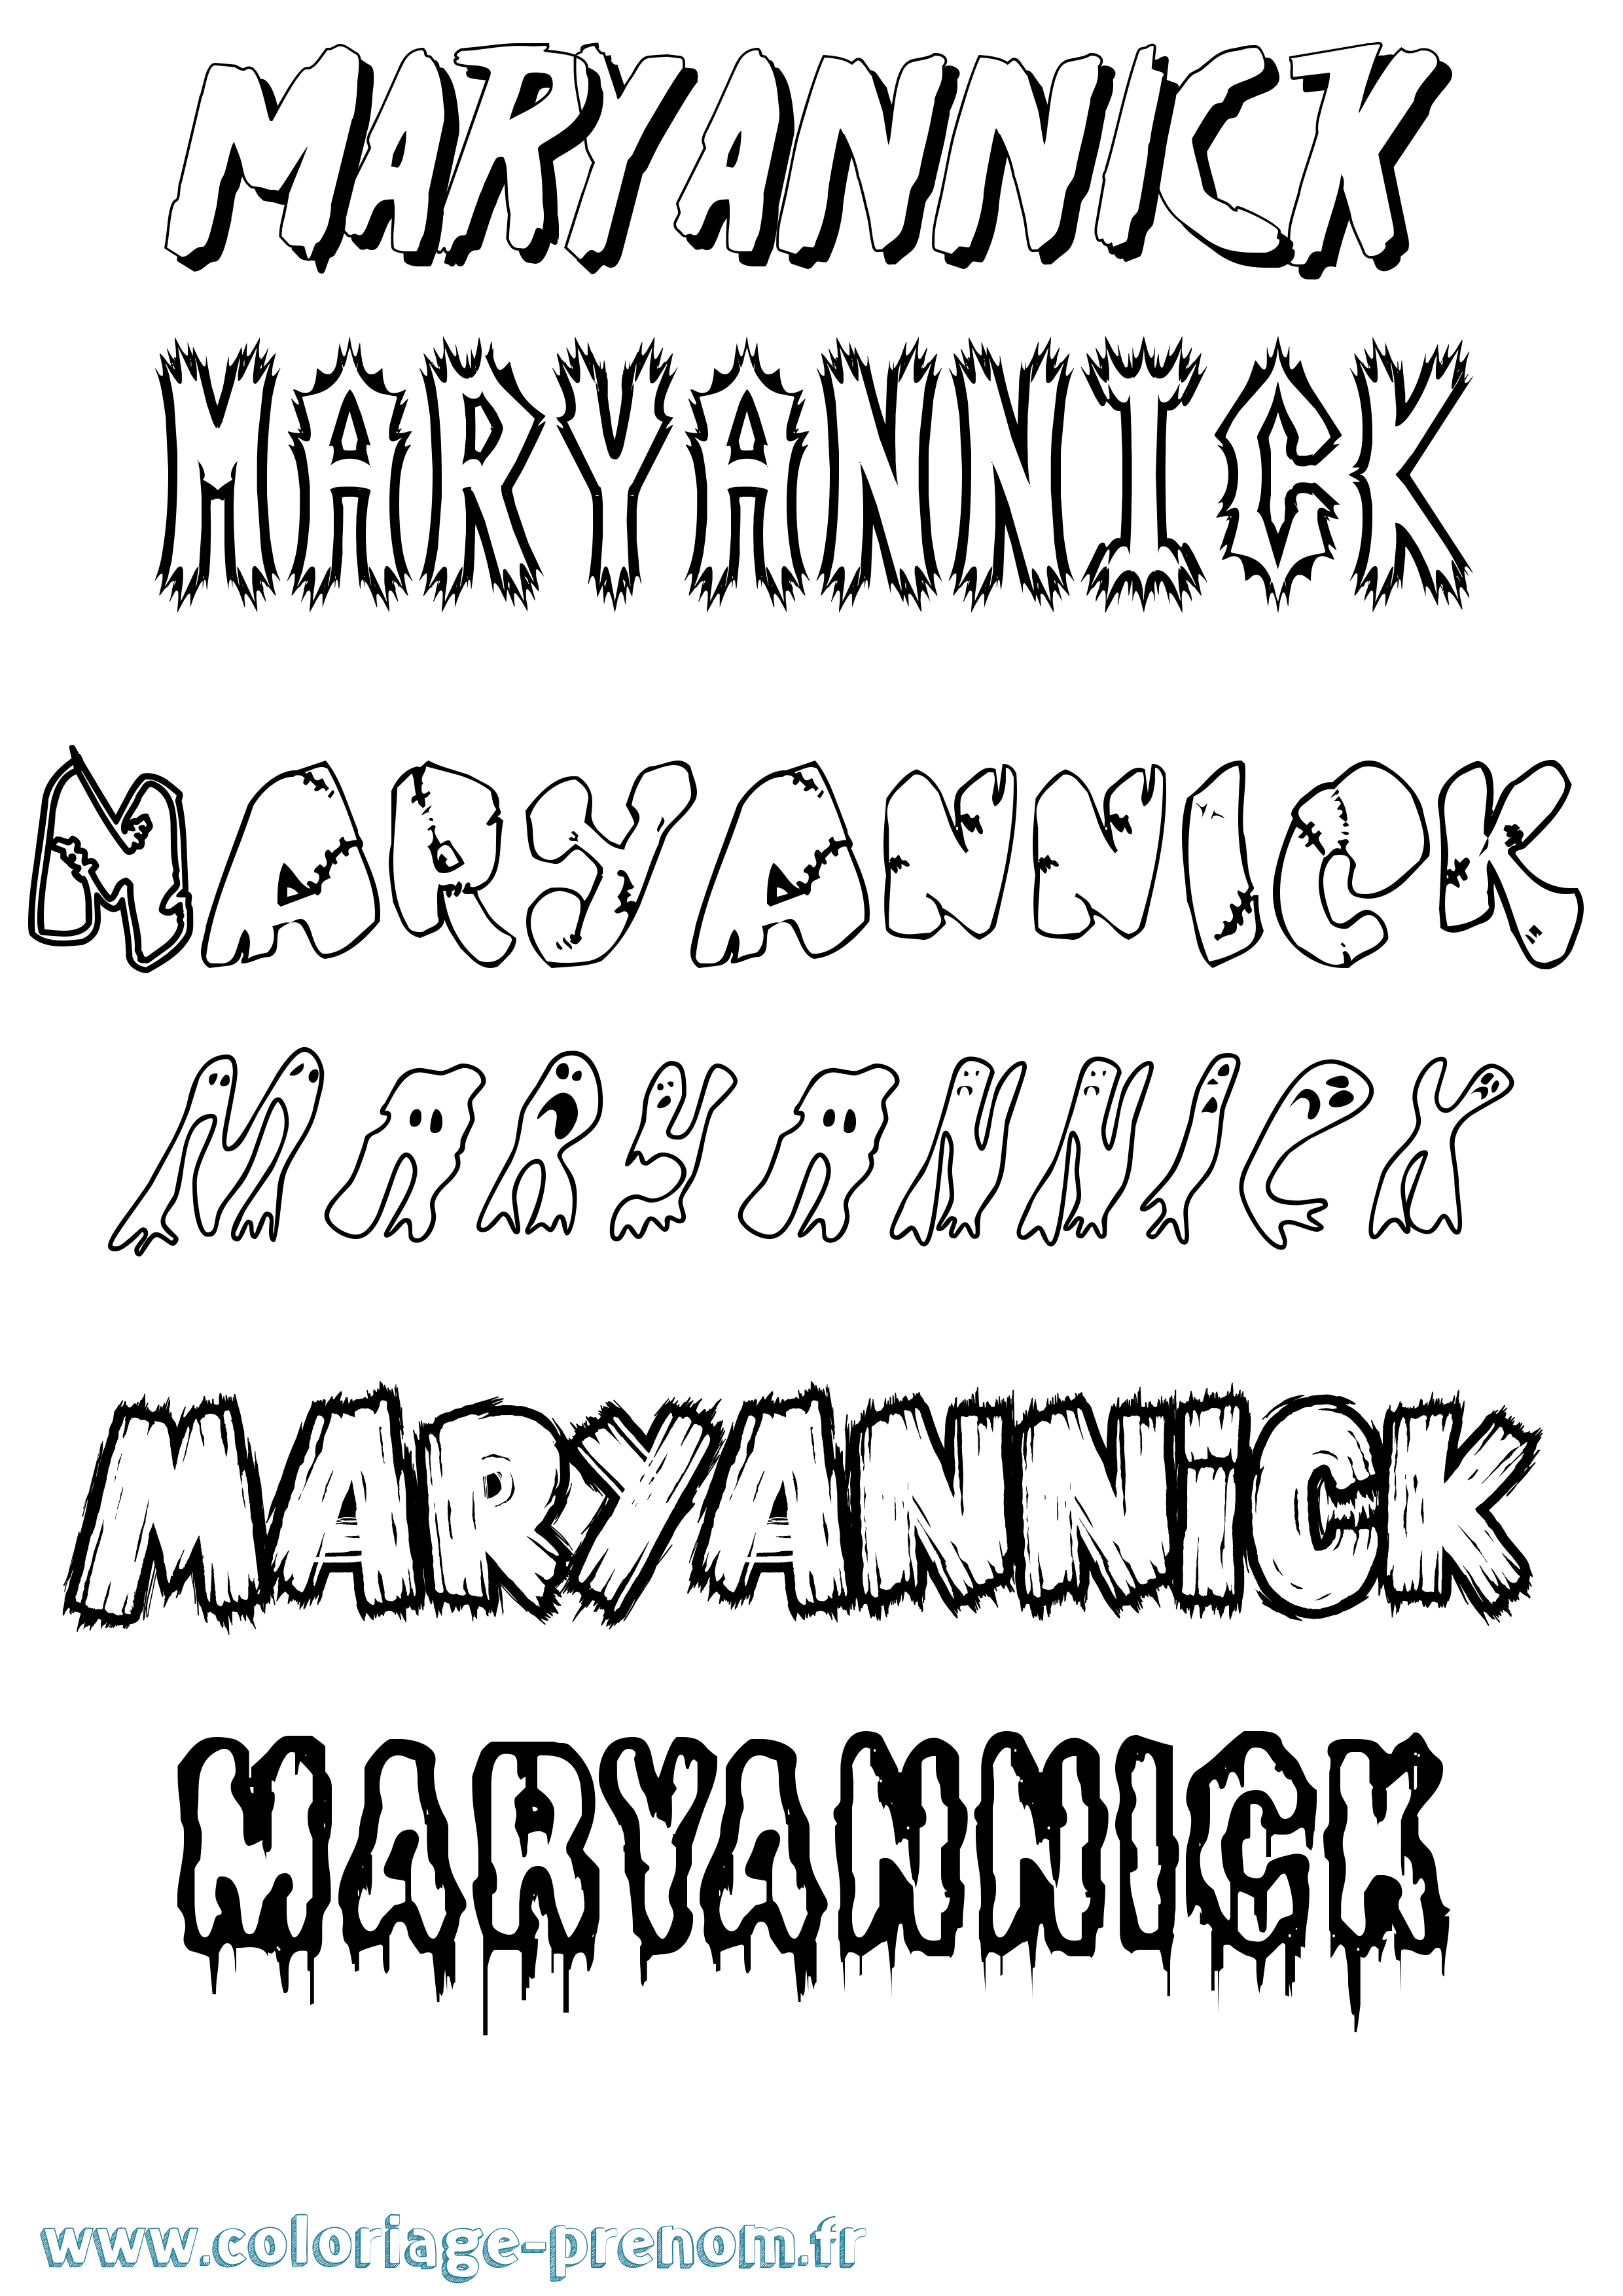 Coloriage prénom Maryannick Frisson